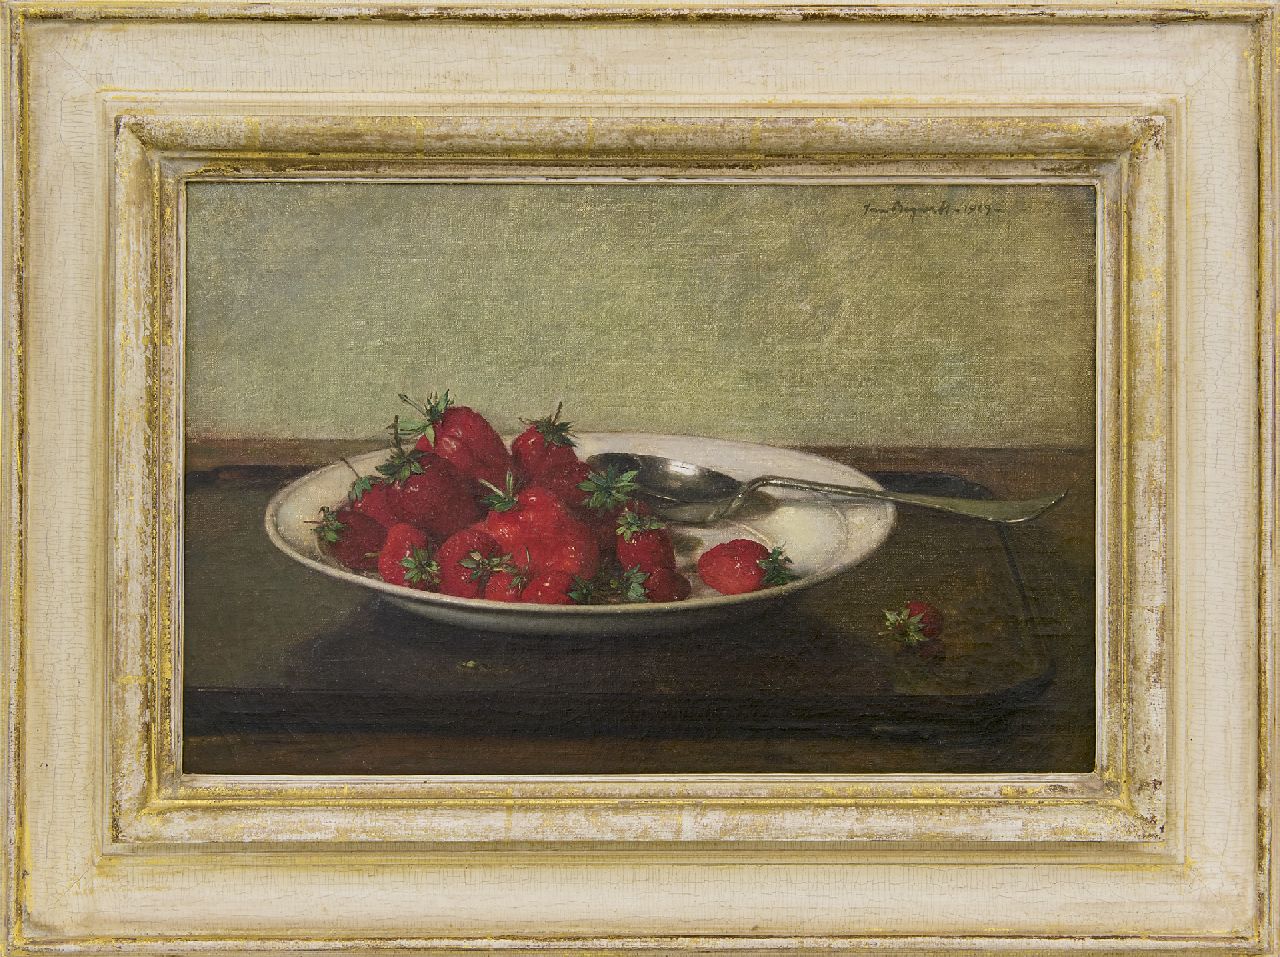 Bogaerts J.J.M.  | Johannes Jacobus Maria 'Jan' Bogaerts, Stilleven met aardbeien op een aardewerken bord, olieverf op doek 27,1 x 41,4 cm, gesigneerd rechtsboven en gedateerd 1929